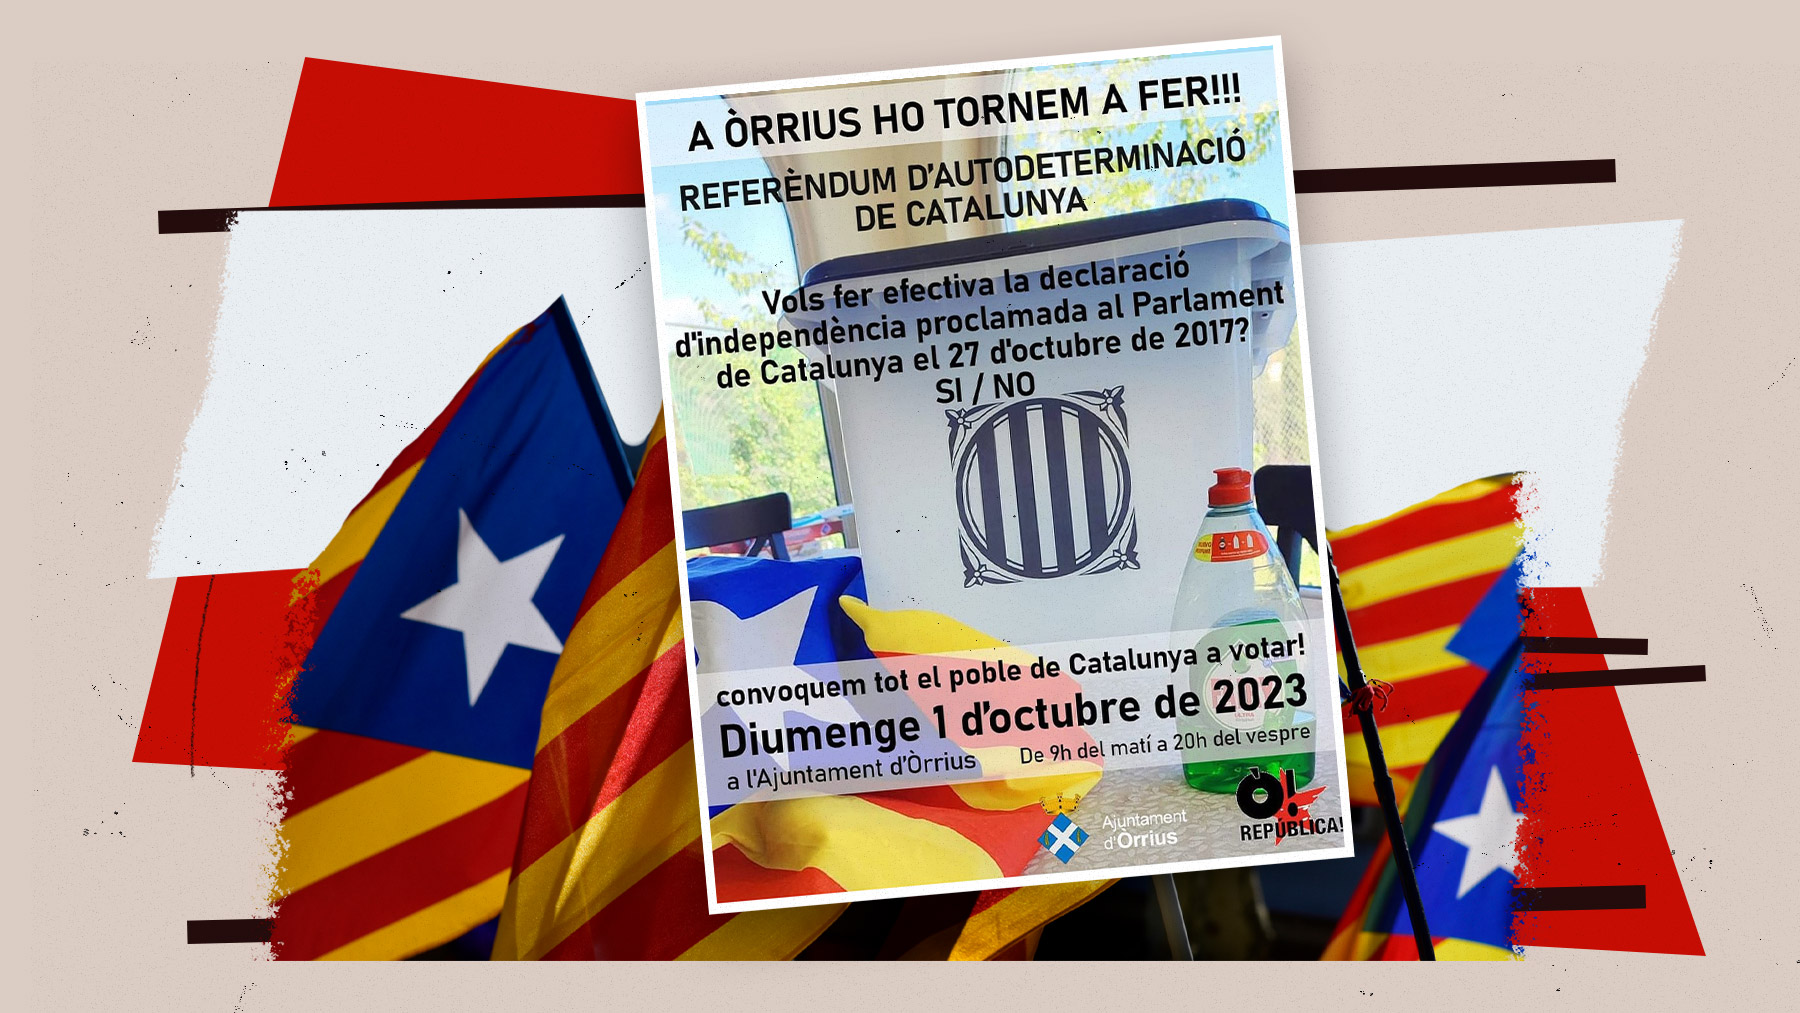 El ayuntamiento de Òrrius ha organizado una consulta sobre la independencia